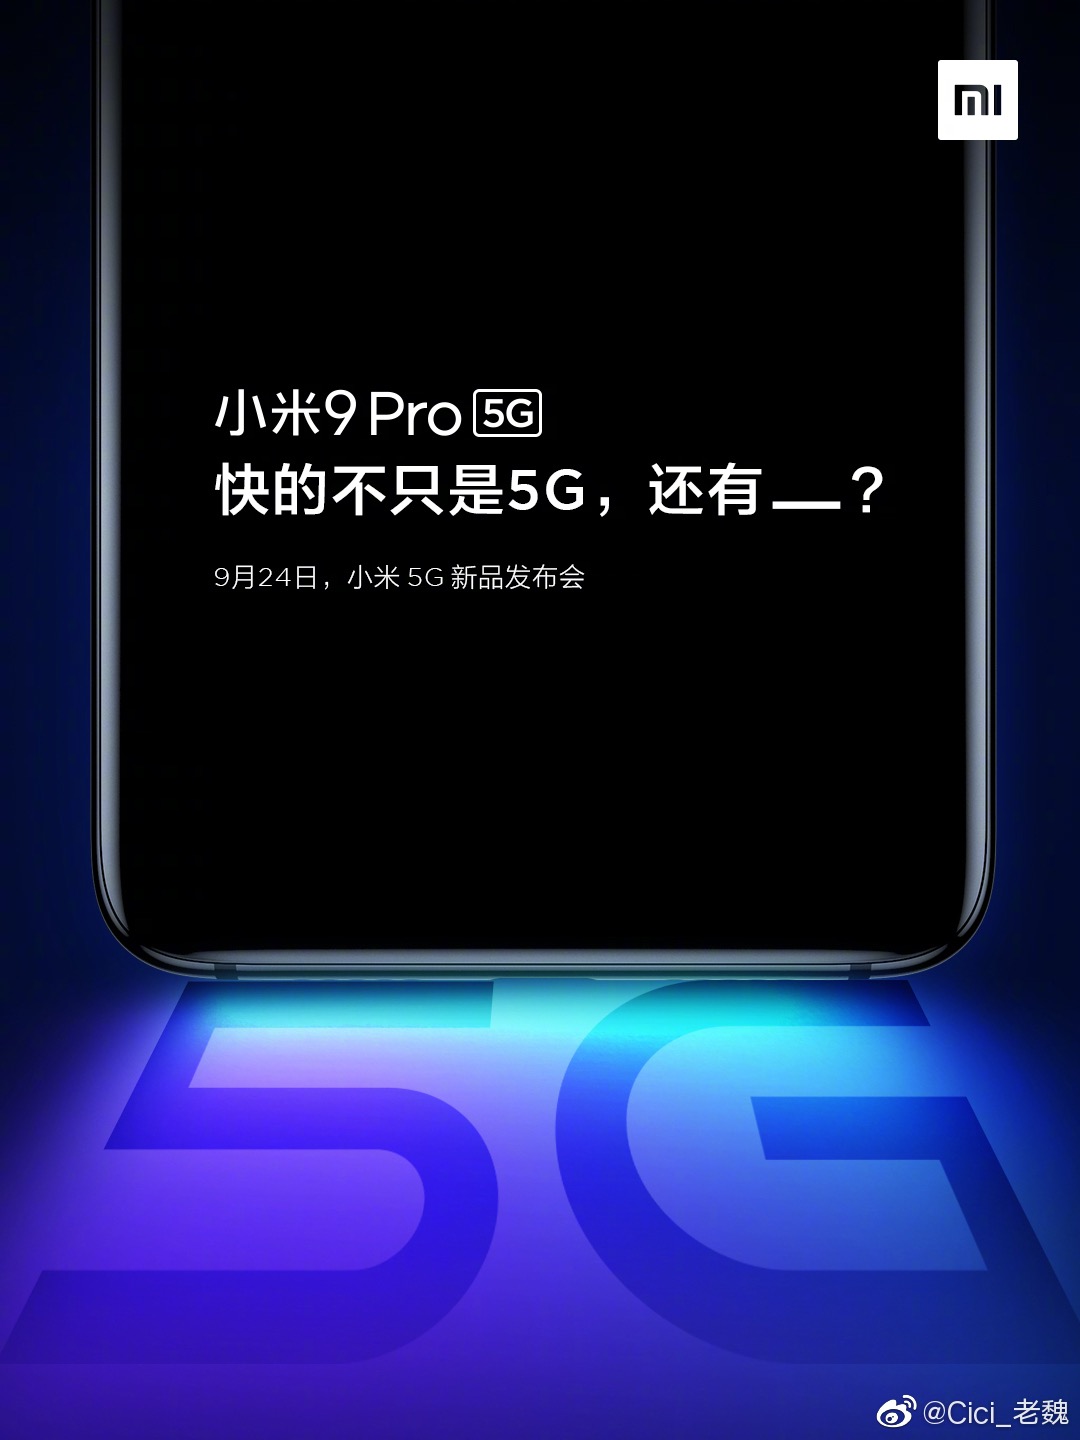 Особенности и технические характеристики Xiaomi Mi 9 Pro 5G. Xiaomi Зависимые новости